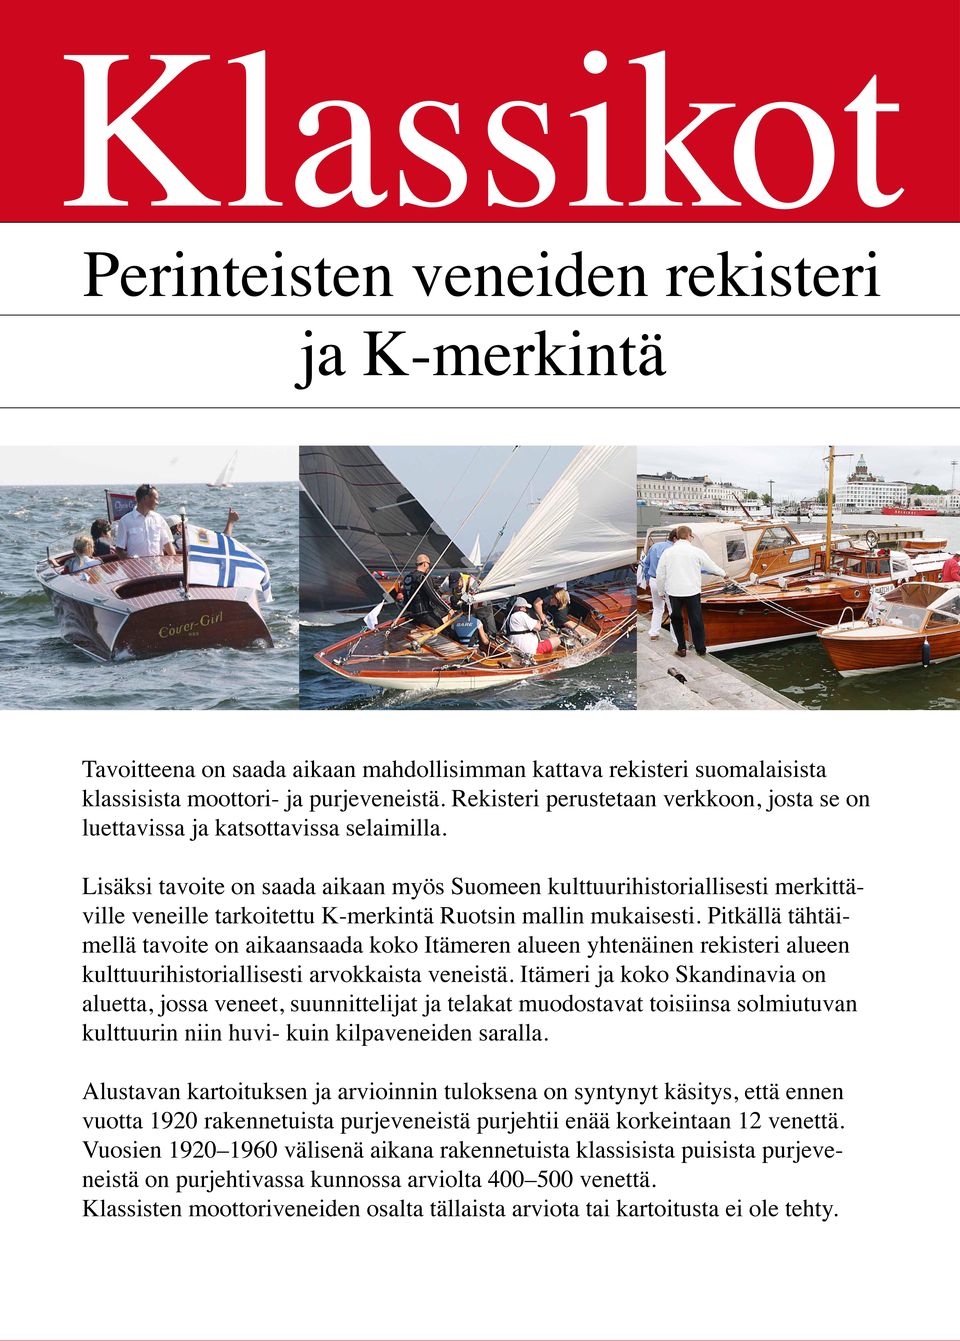 Lisäksi tavoite on saada aikaan myös Suomeen kulttuurihistoriallisesti merkittäville veneille tarkoitettu K-merkintä Ruotsin mallin mukaisesti.